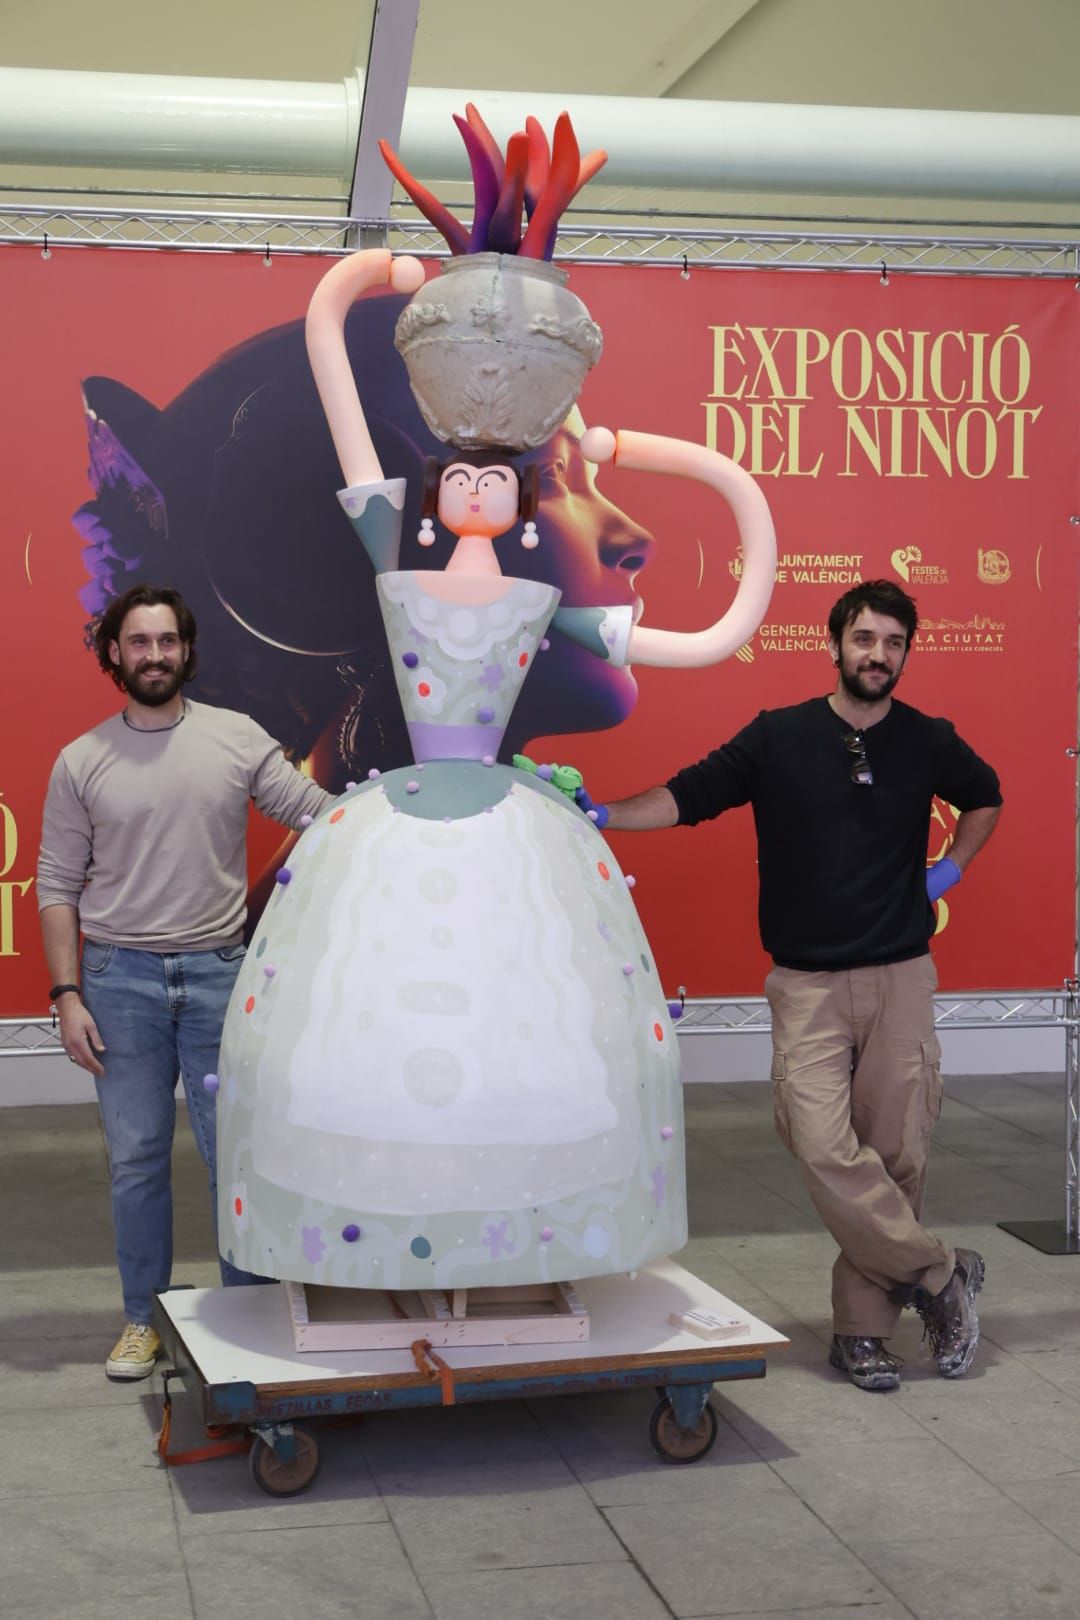 Fallas 2023 | Entrega de Ninots a la Exposición (sesión lunes por la tarde)